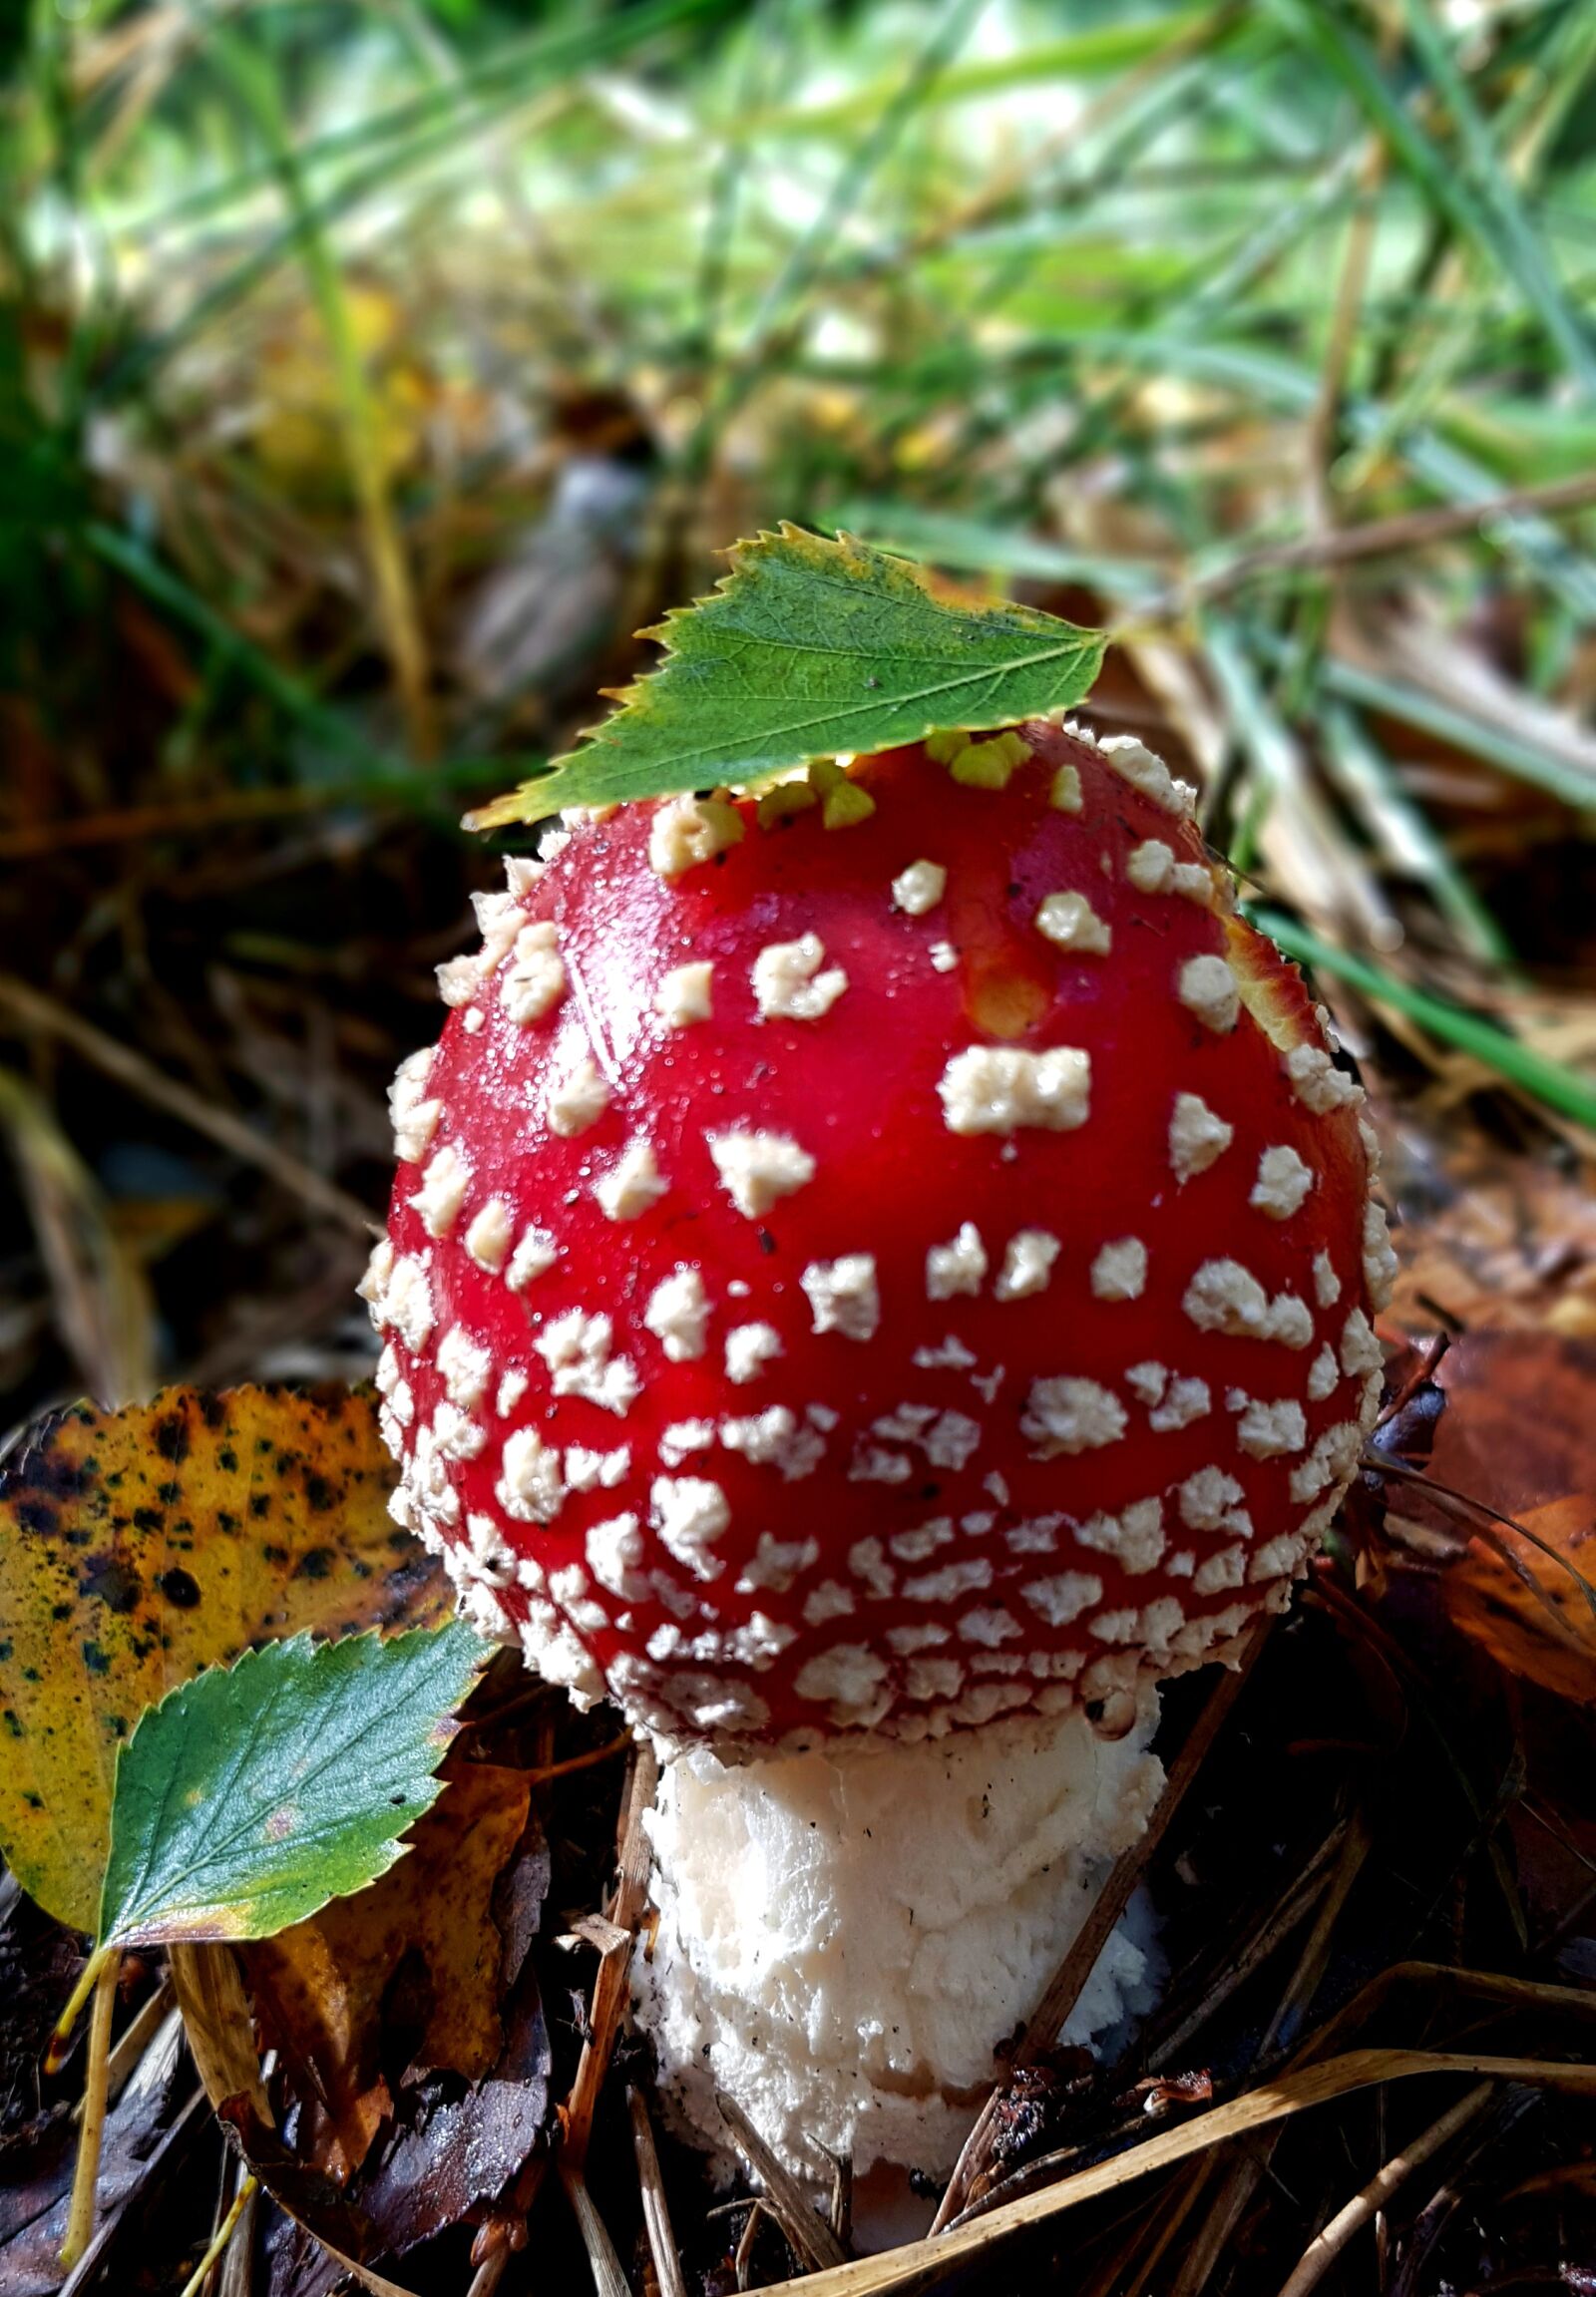 Samsung Galaxy S7 sample photo. Mushroom, fly agaric, autumn photography